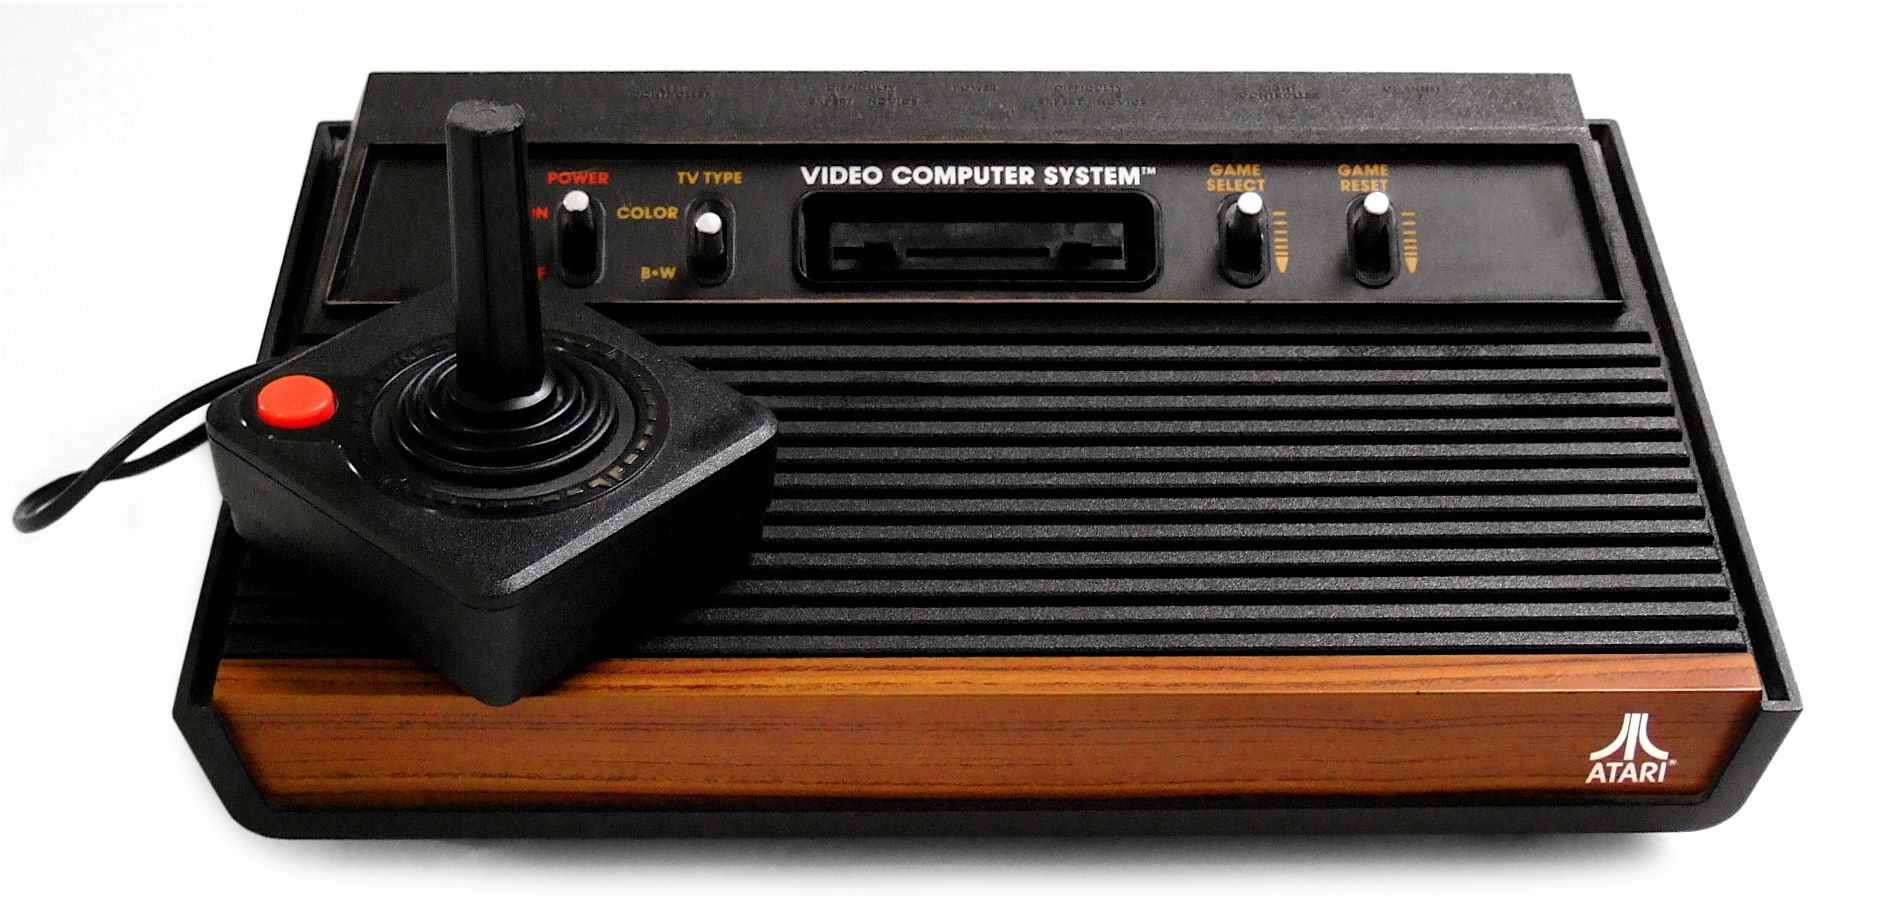 Atari, akıllı ev aletleri sektörüne giriyor